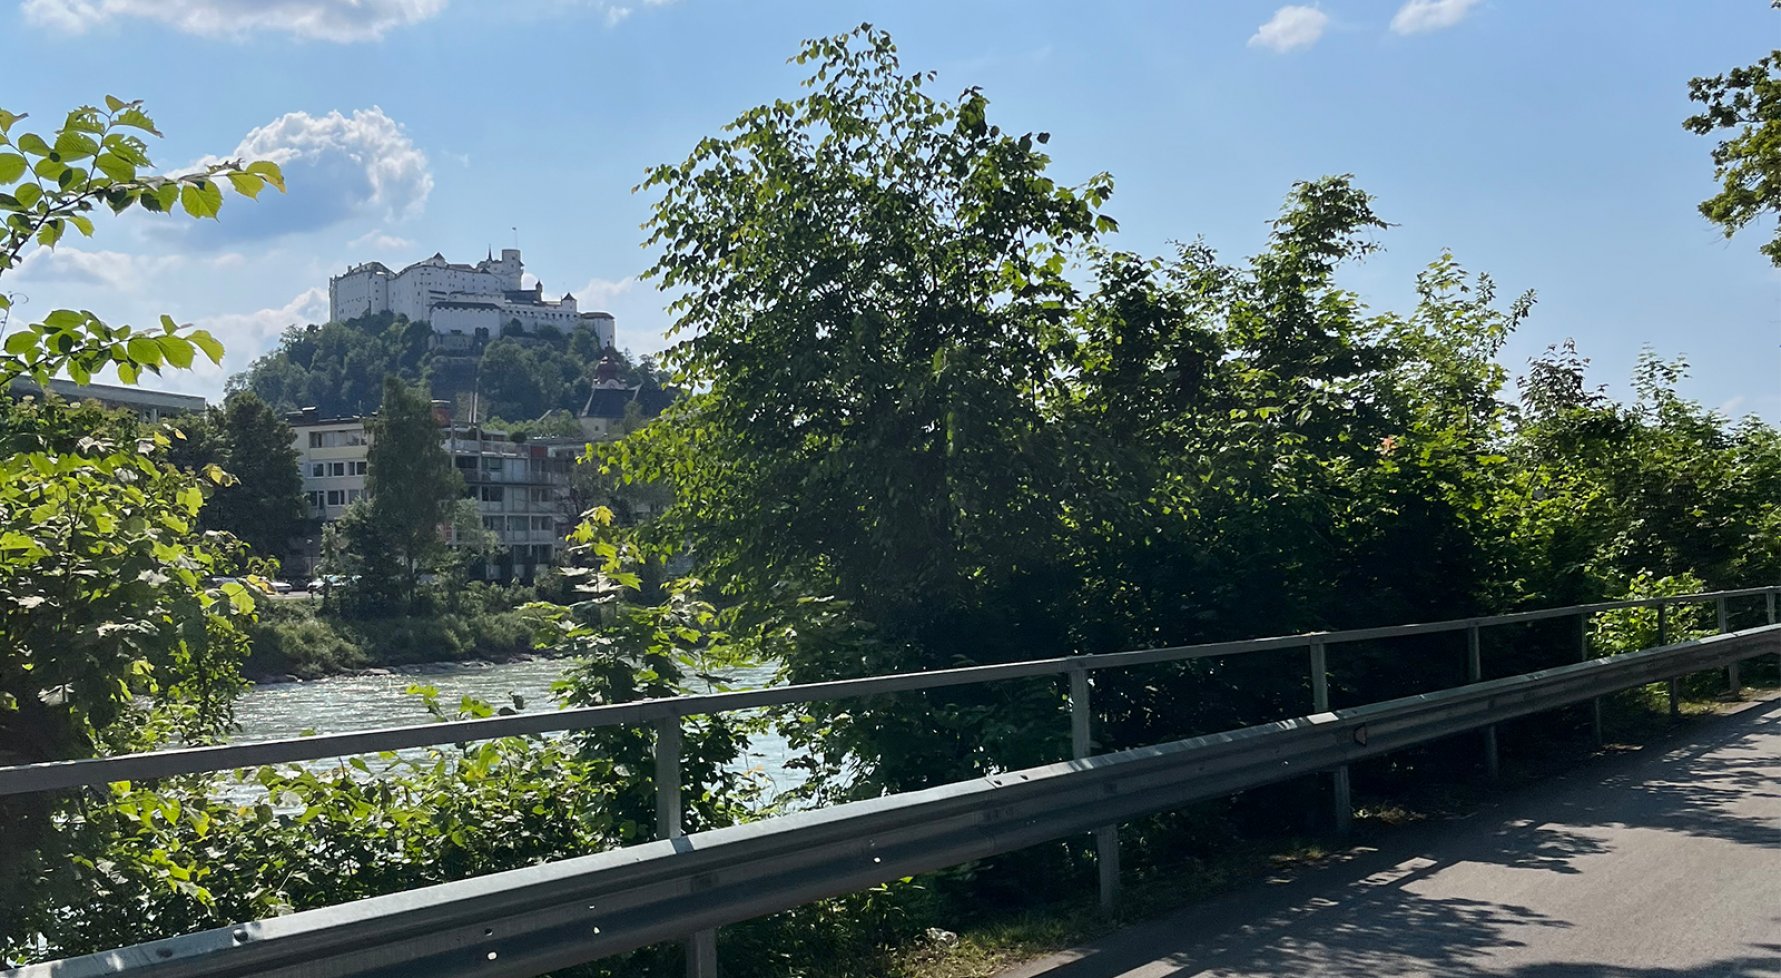 Immobilie in 5020 Salzburg-Aigen: Sonnige ca. 70m² große Balkonwohnung direkt an der Salzach! - bild 1